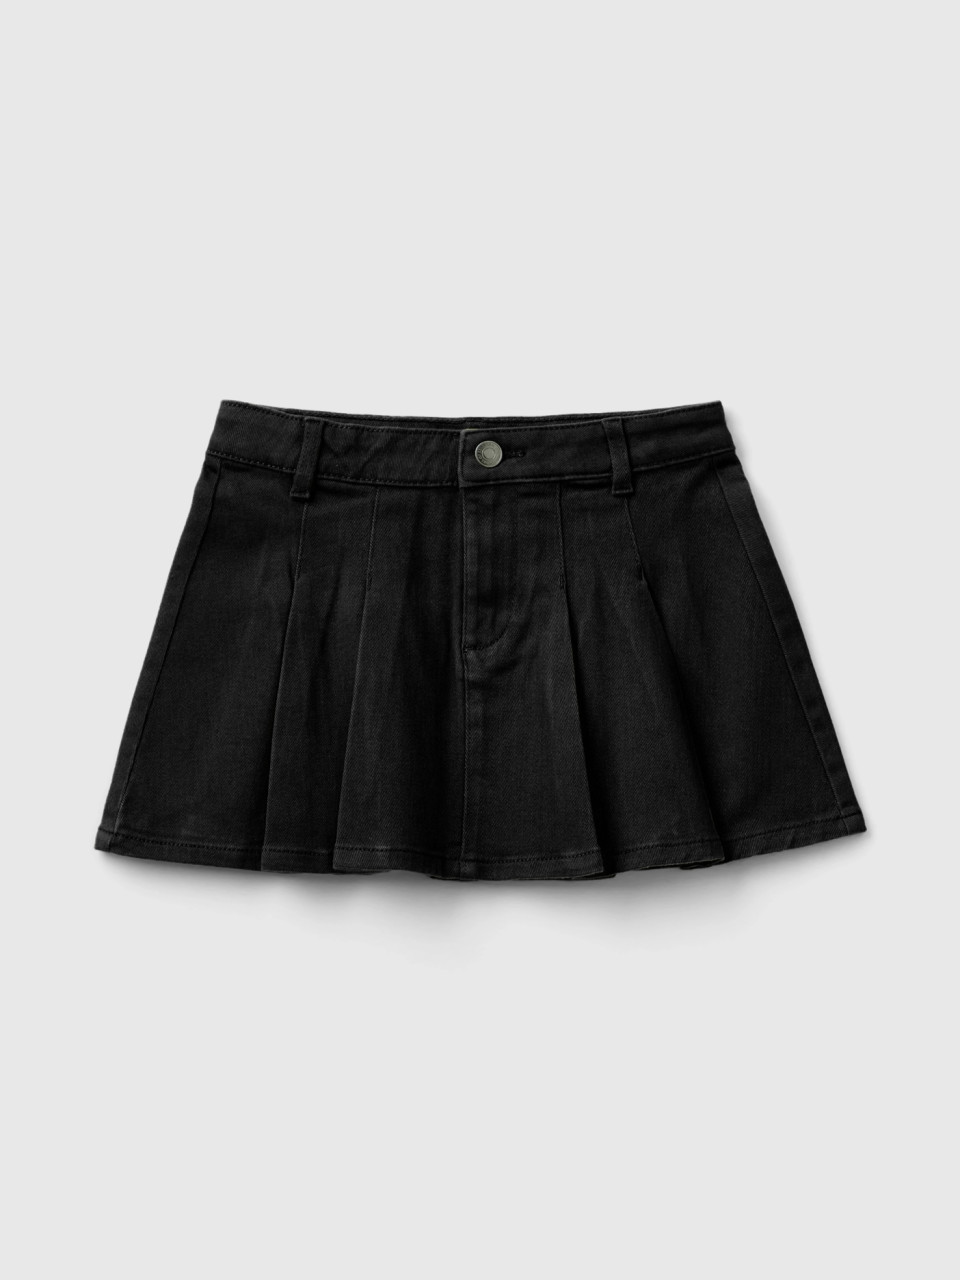 Benetton, Pleated Miniskirt, Black, Kids